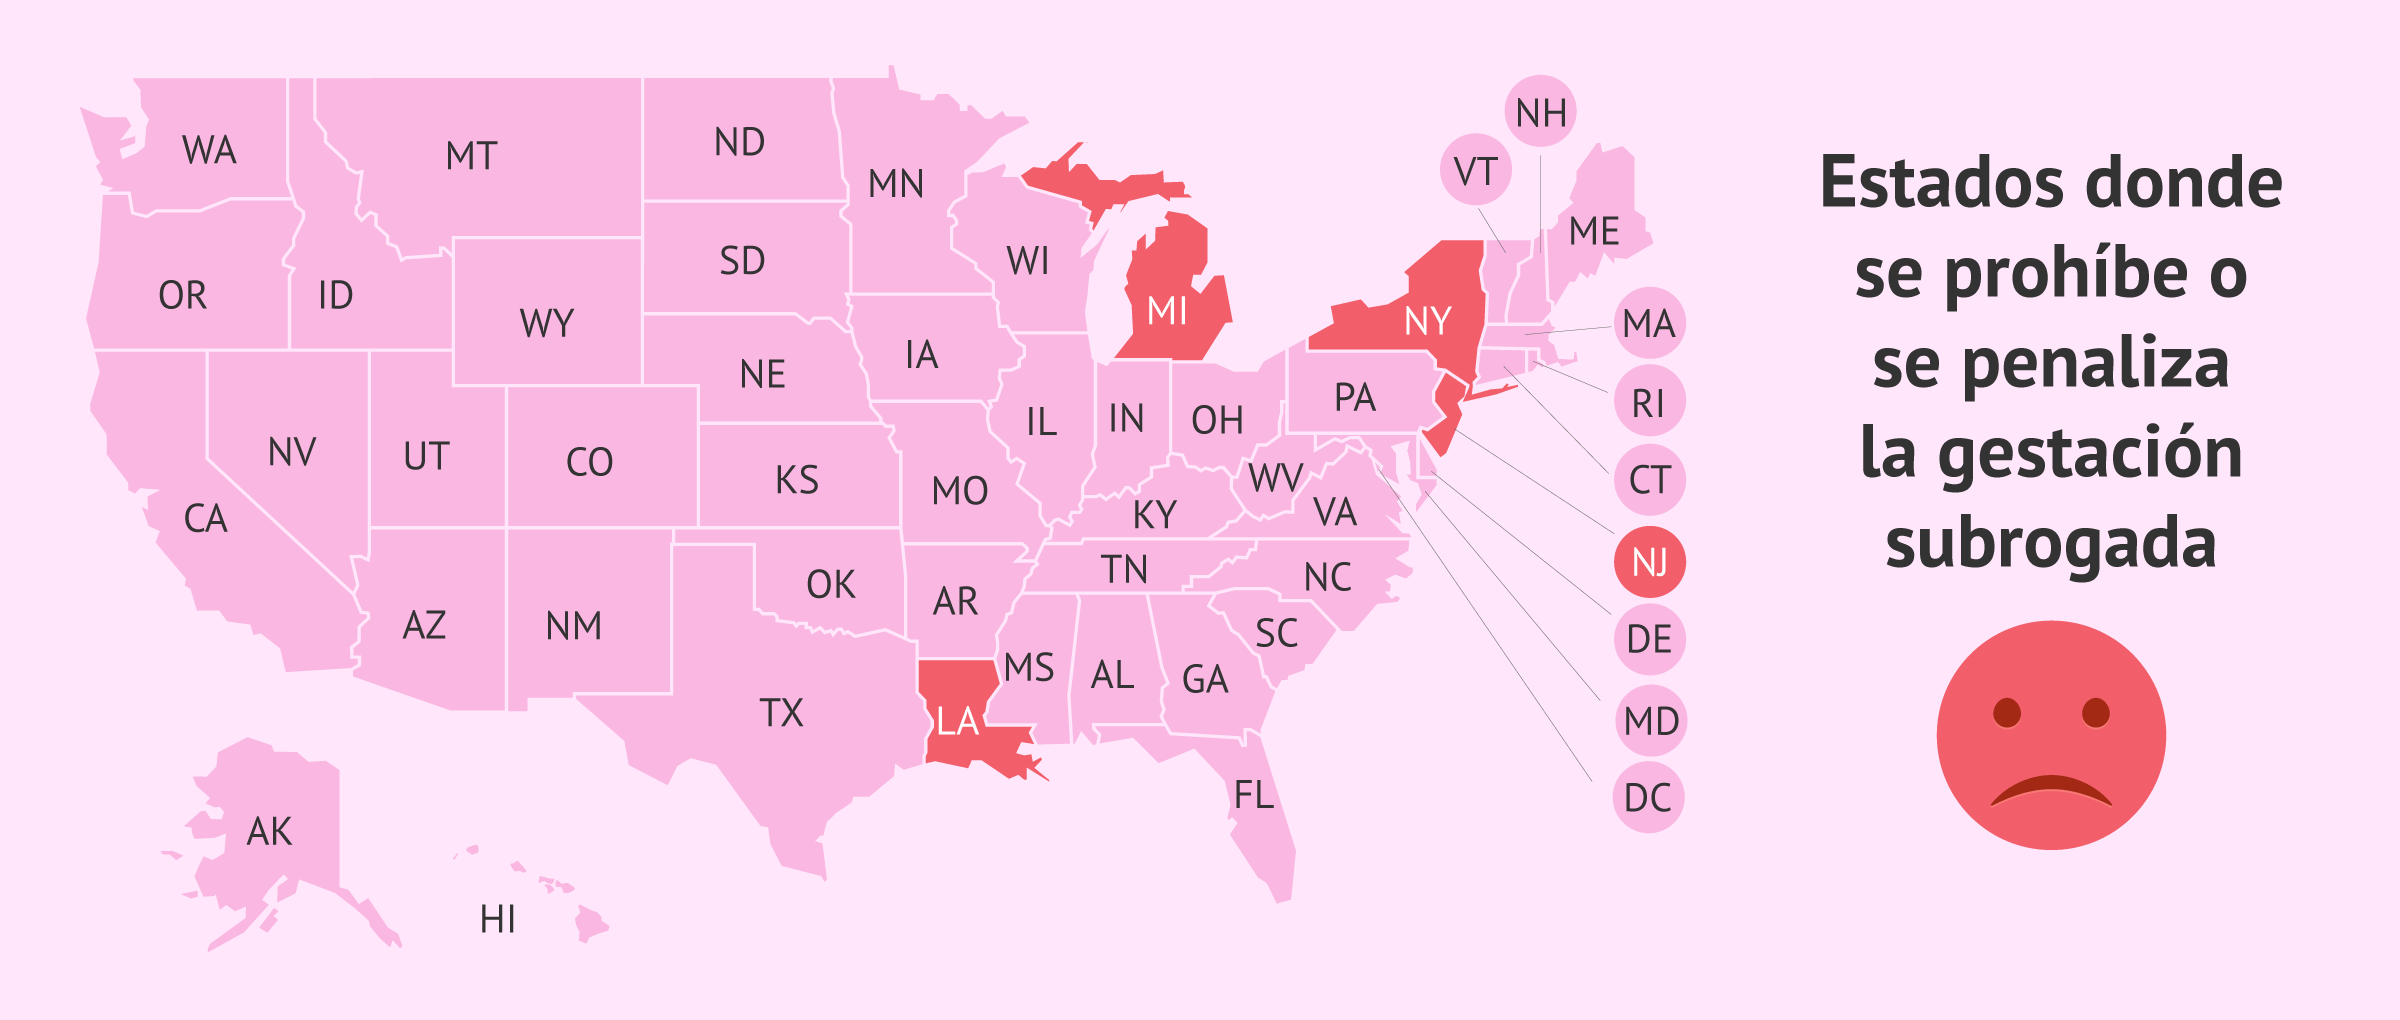 Mapa de los estados de USA donde se restringe o penaliza